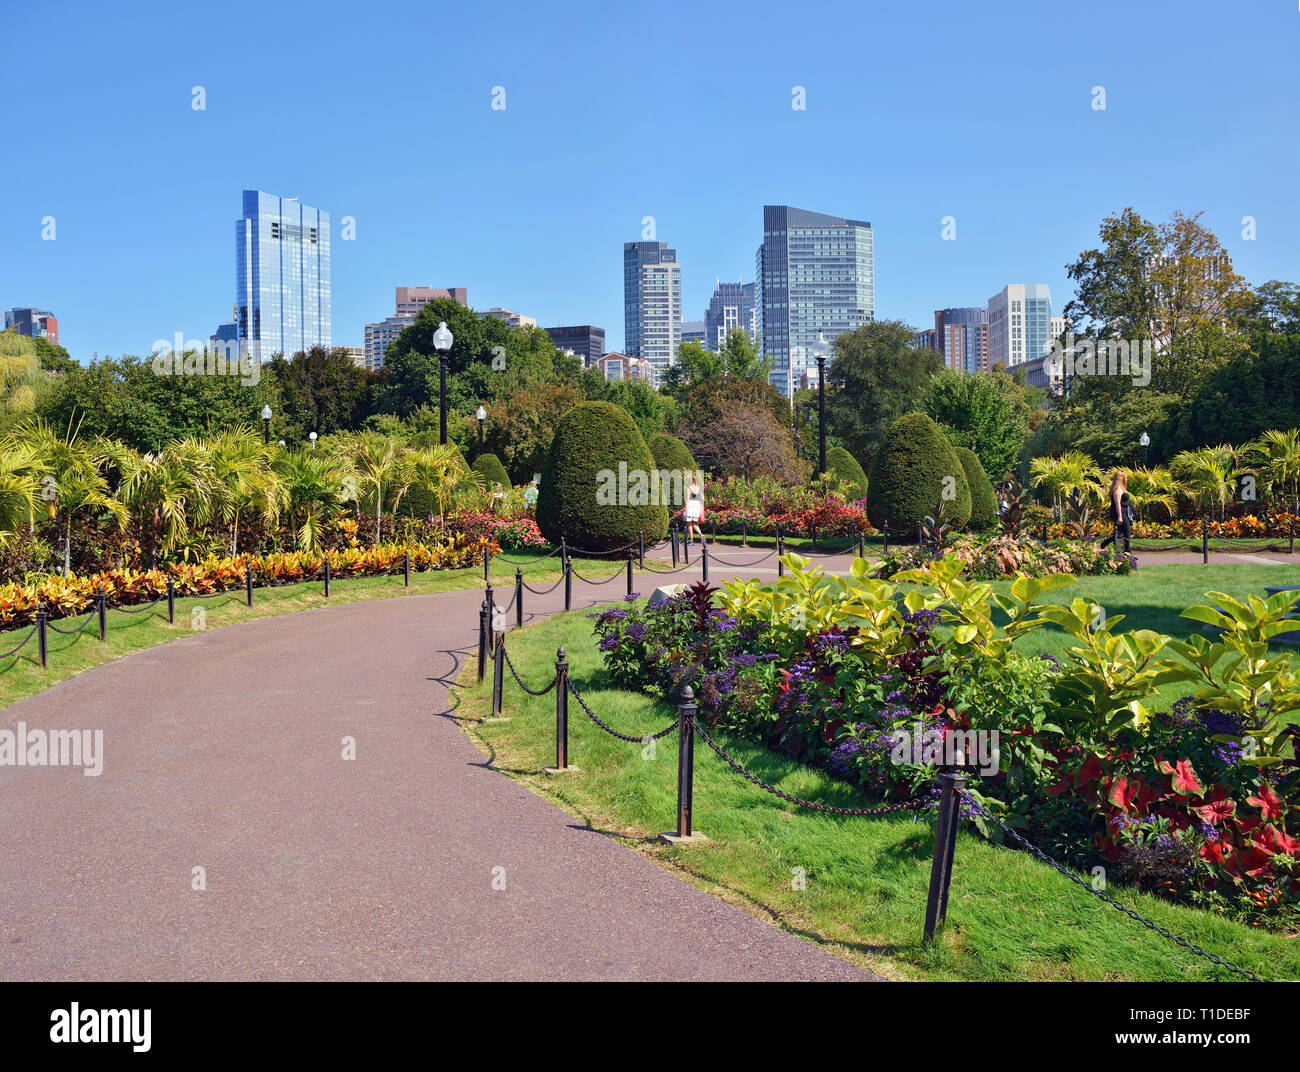 Jardin Public de Boston et sur les toits de la ville en été. Plantes tropicales et des motifs floraux colorés dans American premier jardin botanique. Banque D'Images